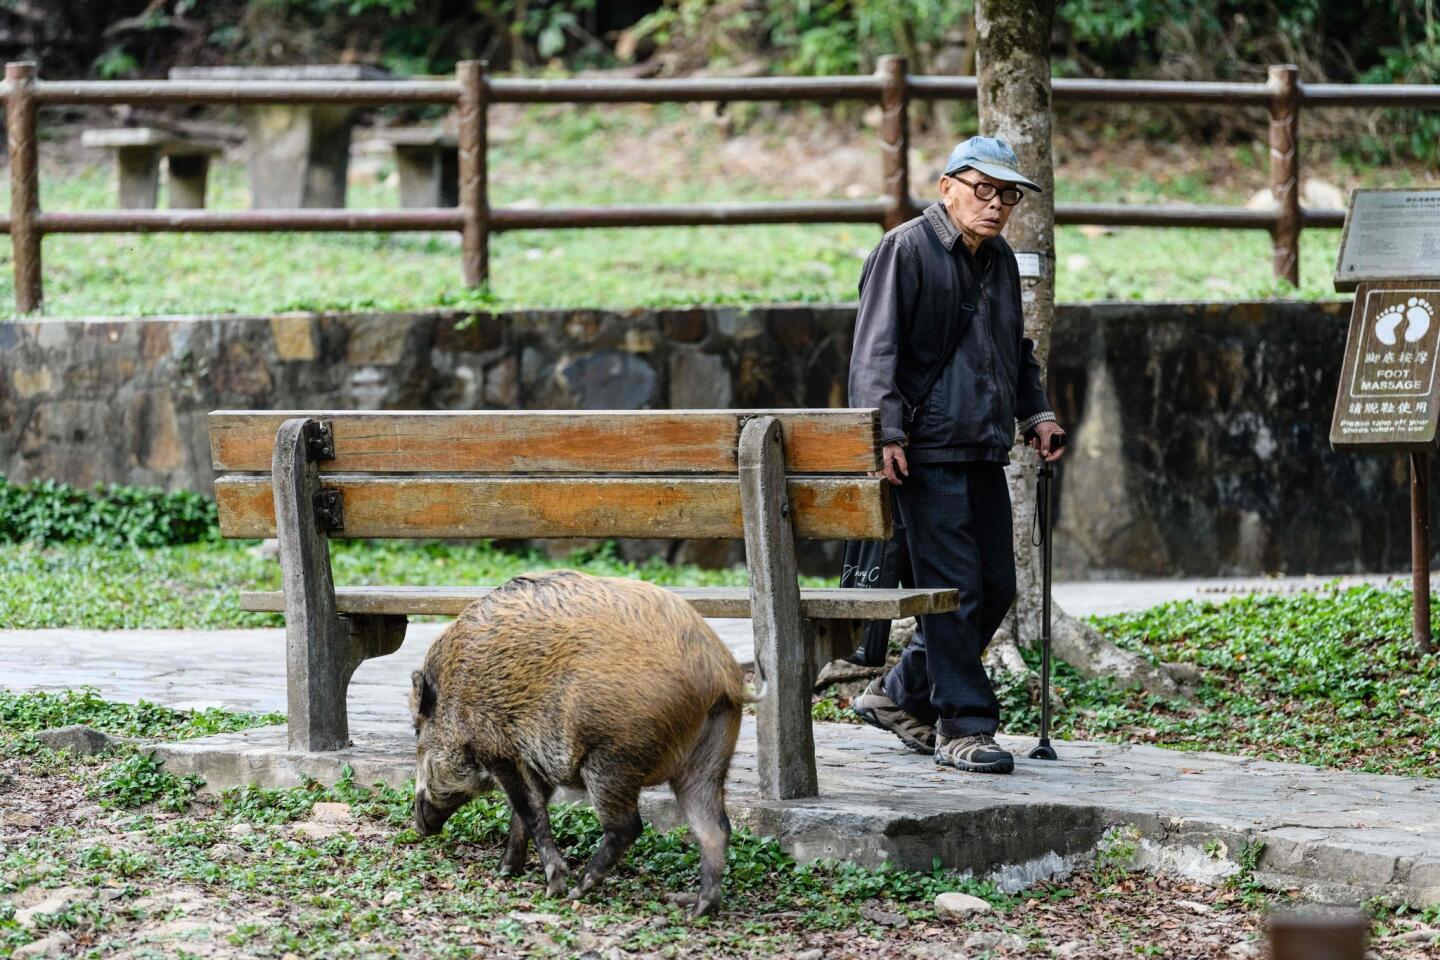 Hong Kong's wild boars